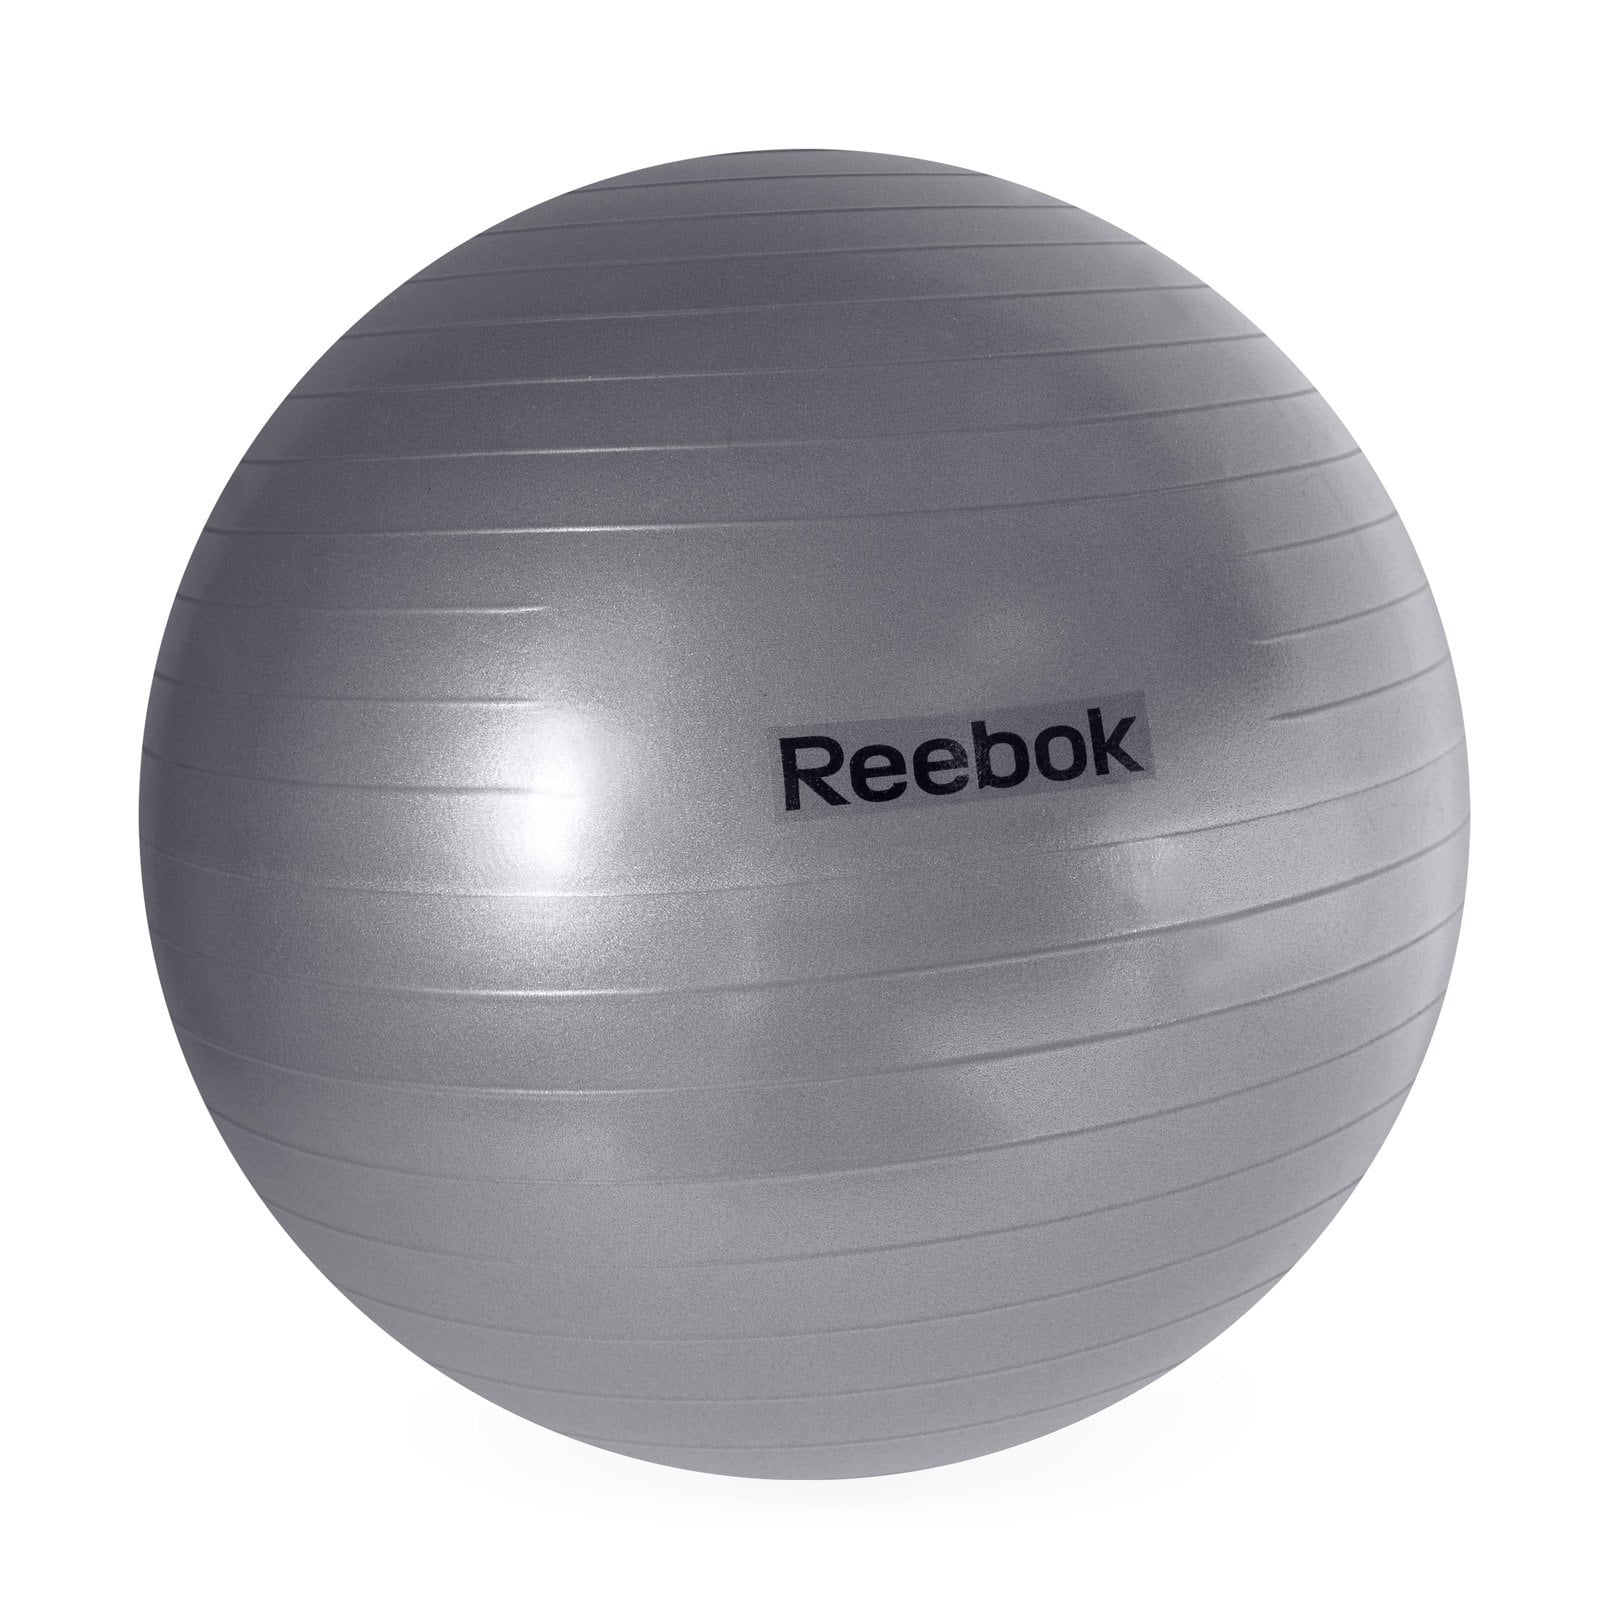 reebok birthing ball